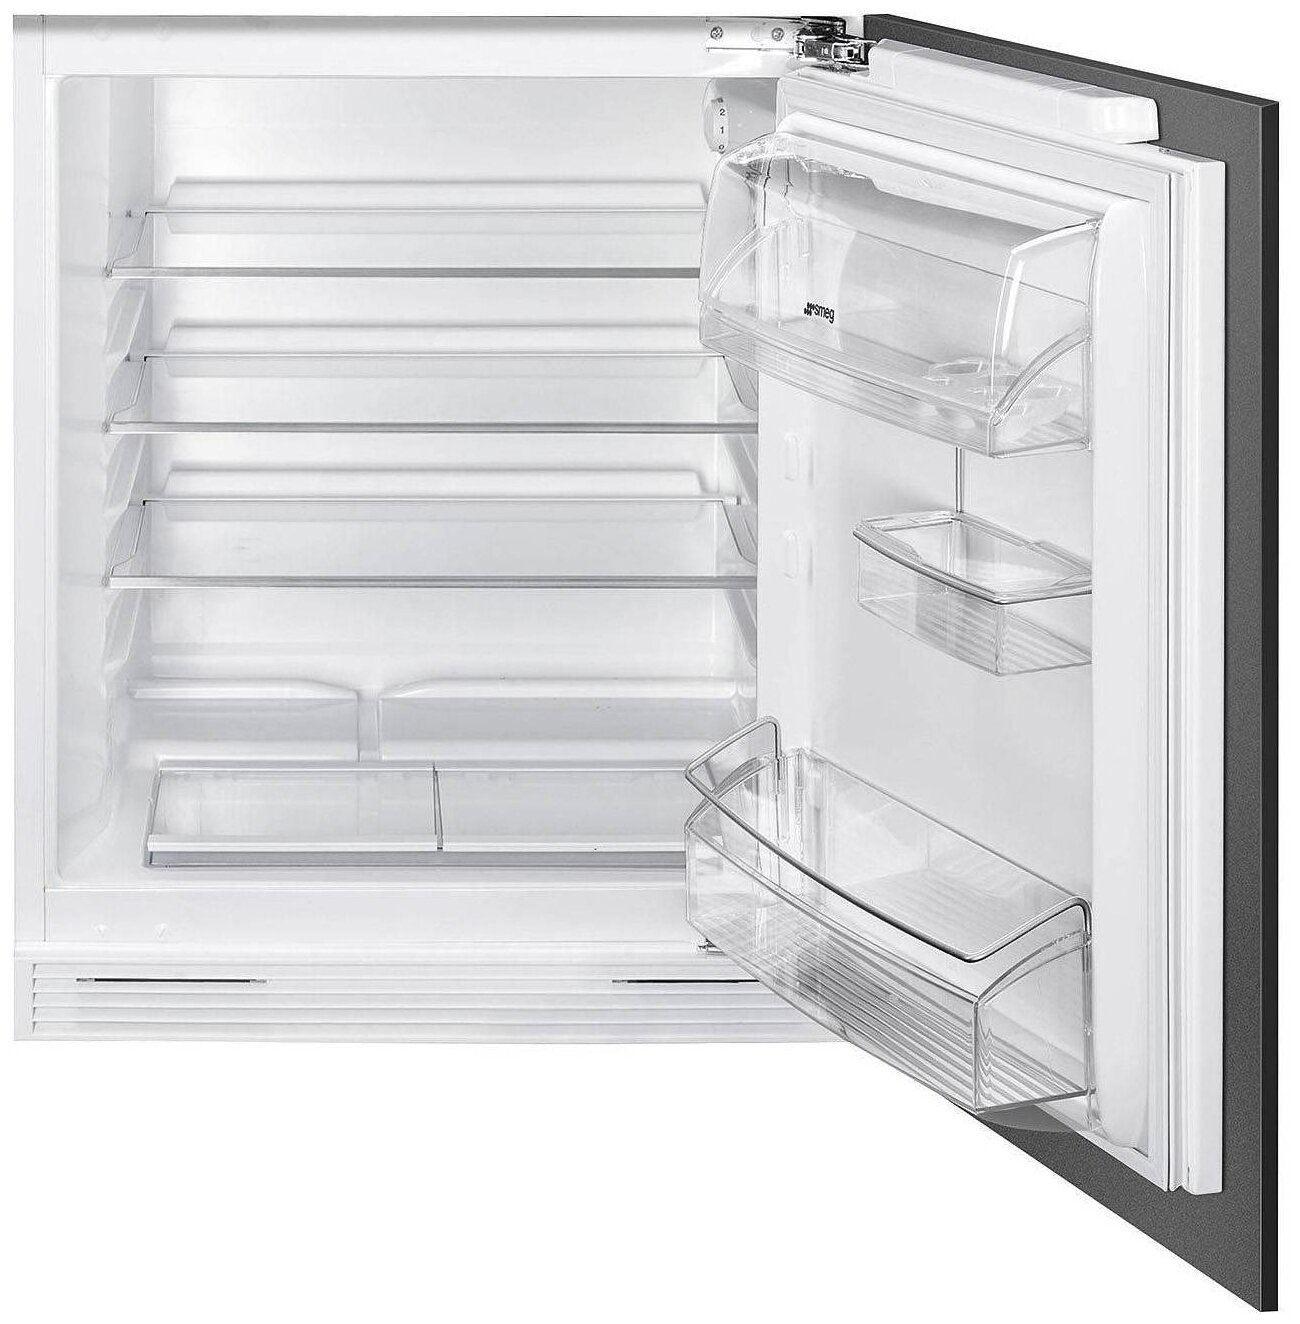 Встраиваемый холодильник Smeg s7323lfep. Встраиваемый холодильник Smeg u8l080df. Встраиваемый холодильник Smeg ud7122csp. Smeg c81721f. Куплю встроенный однокамерный холодильник